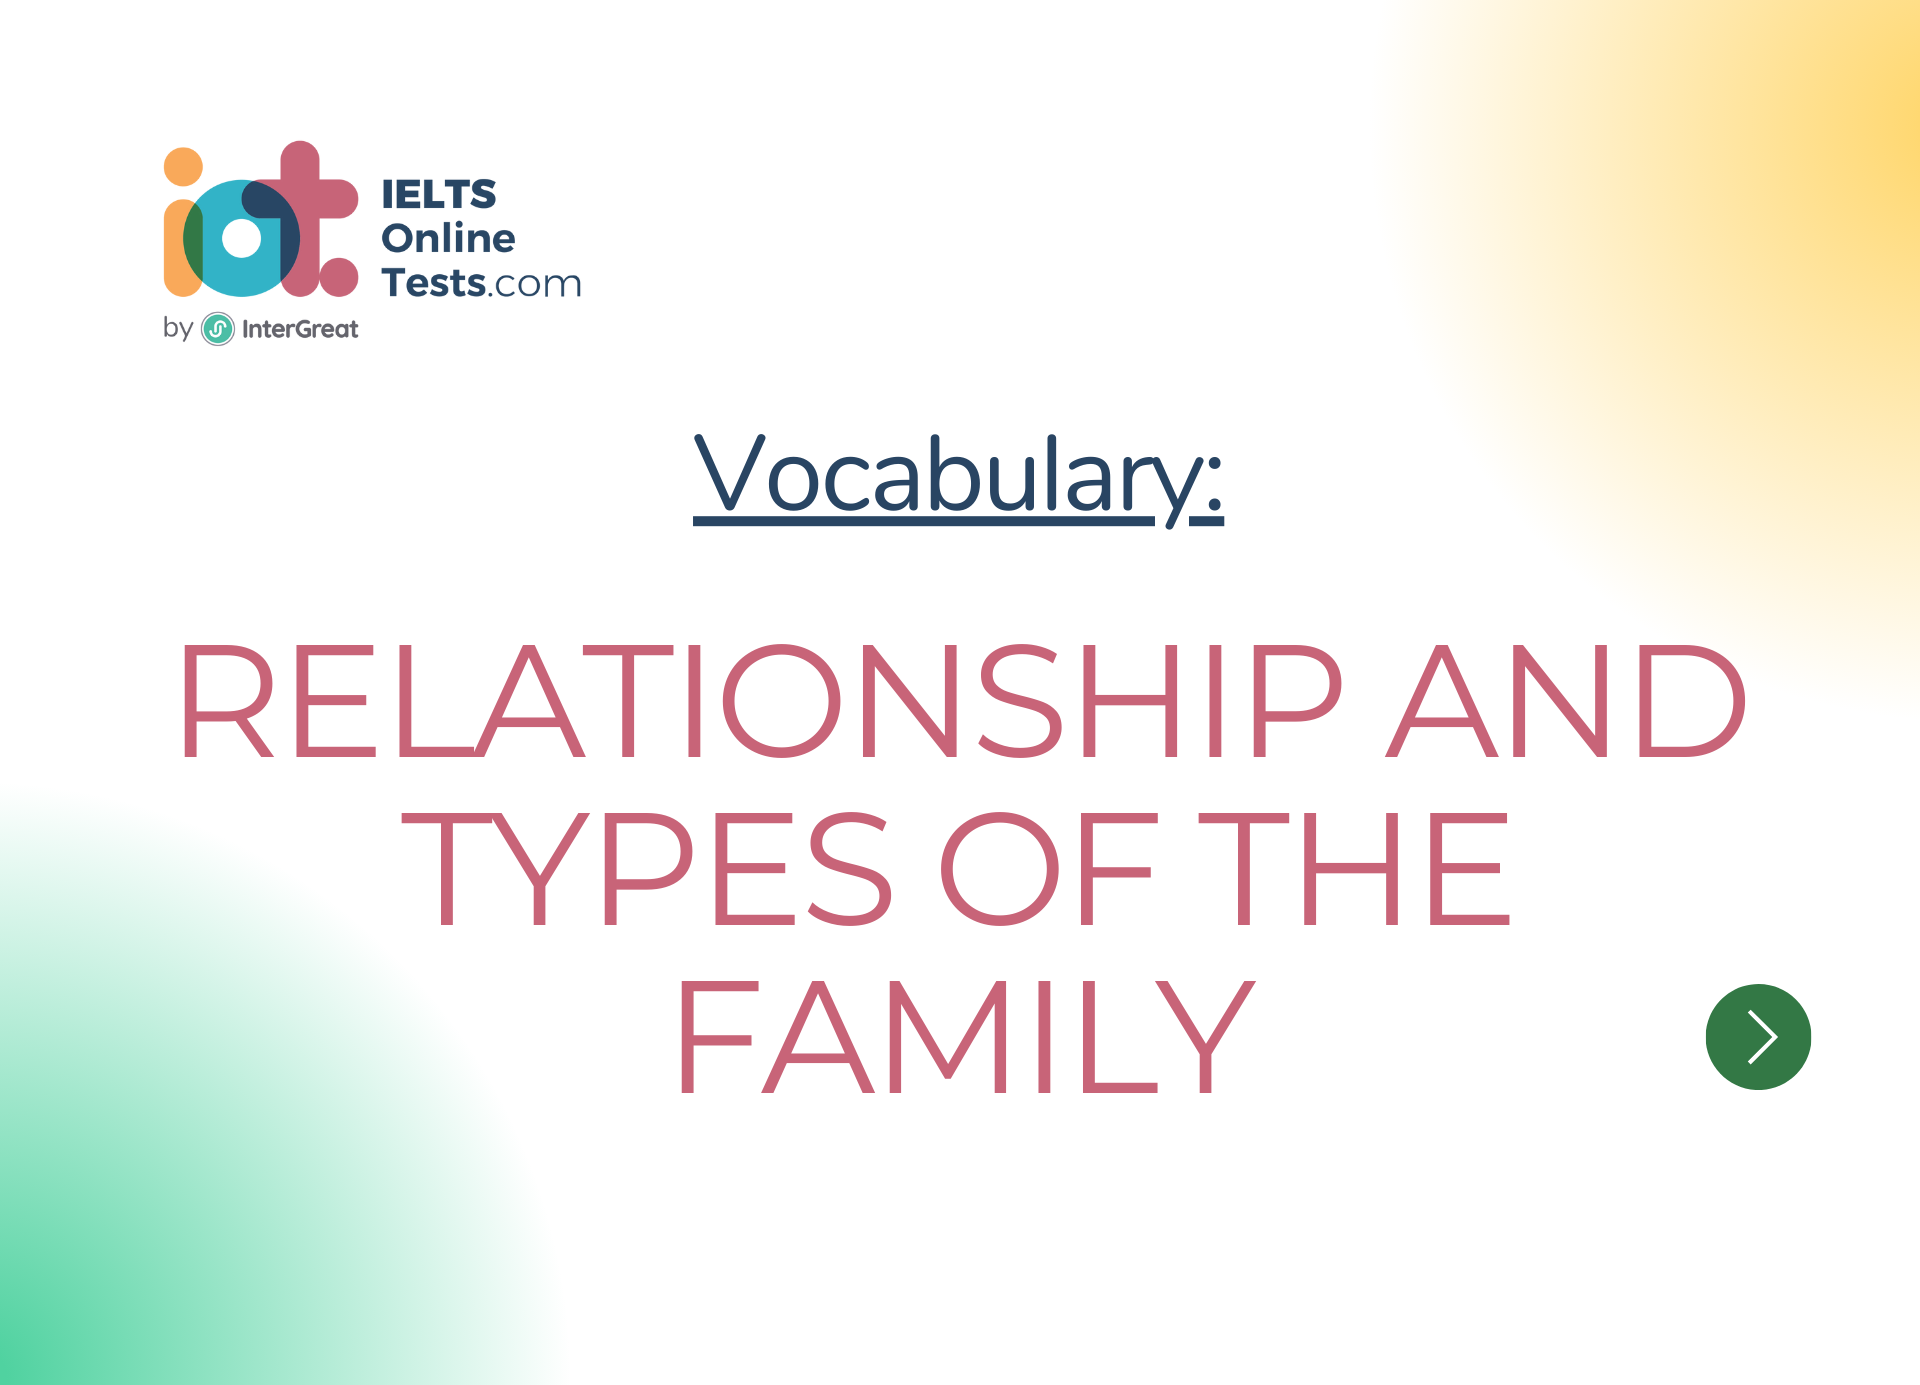 Mối quan hệ và các kiểu gia đình (Relationship and types of the family)